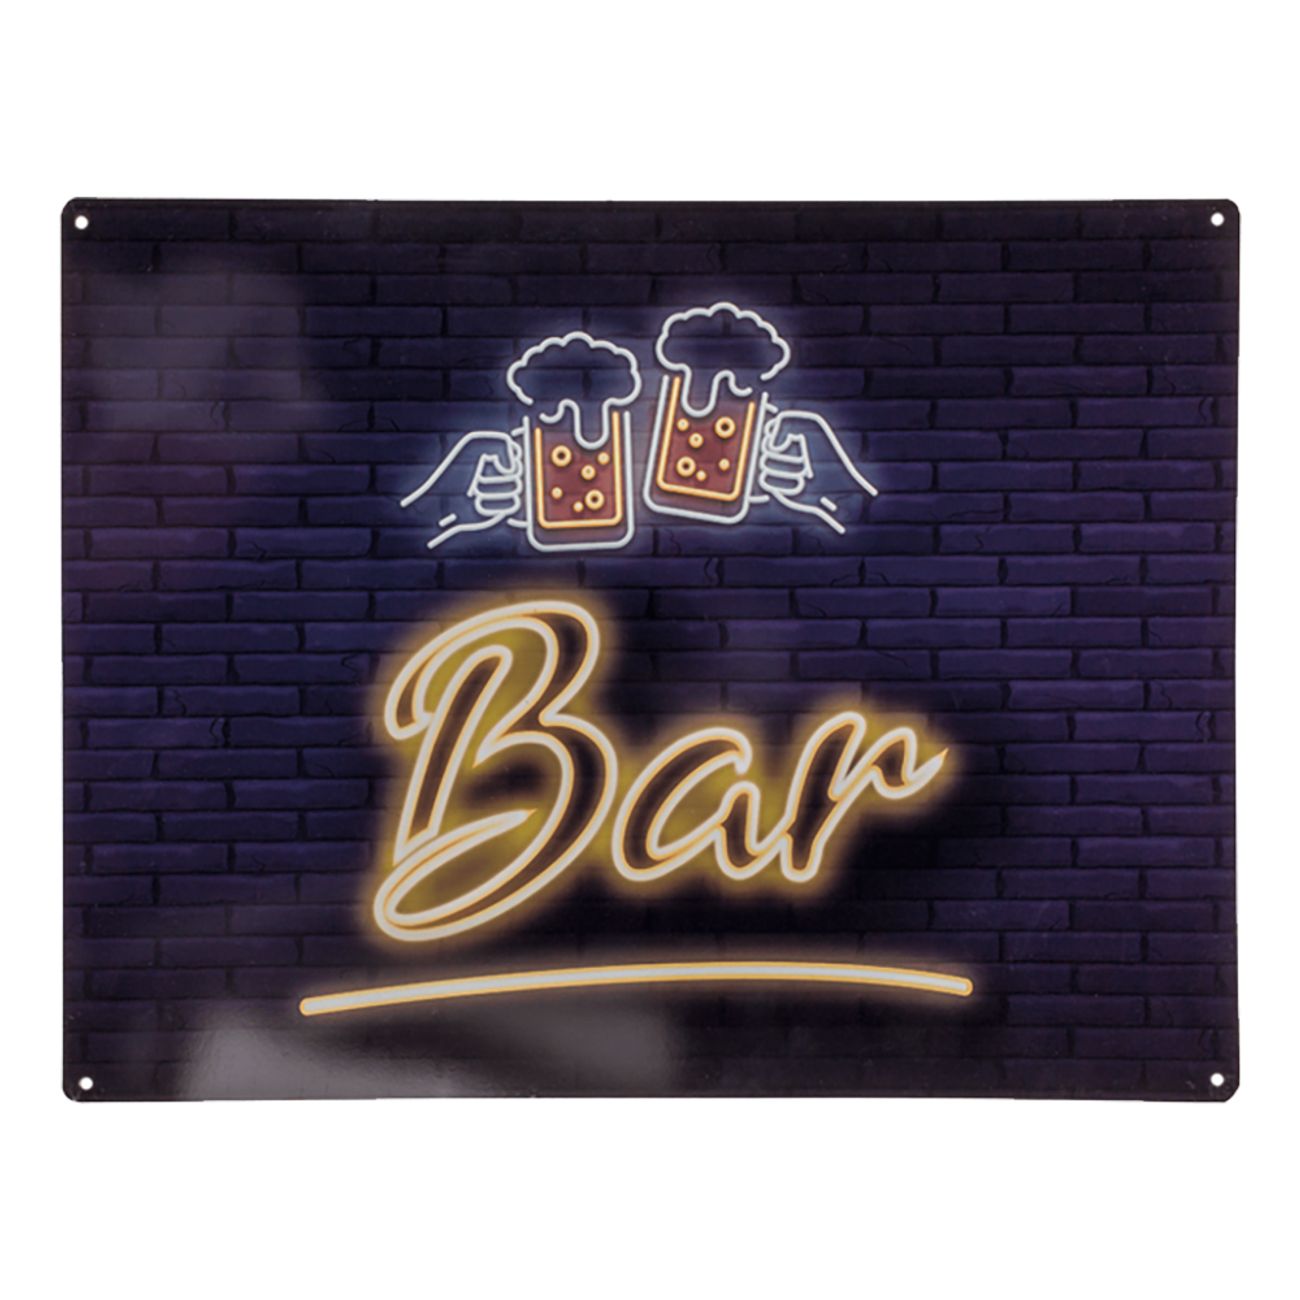 bar-skylt-i-metall-98850-1